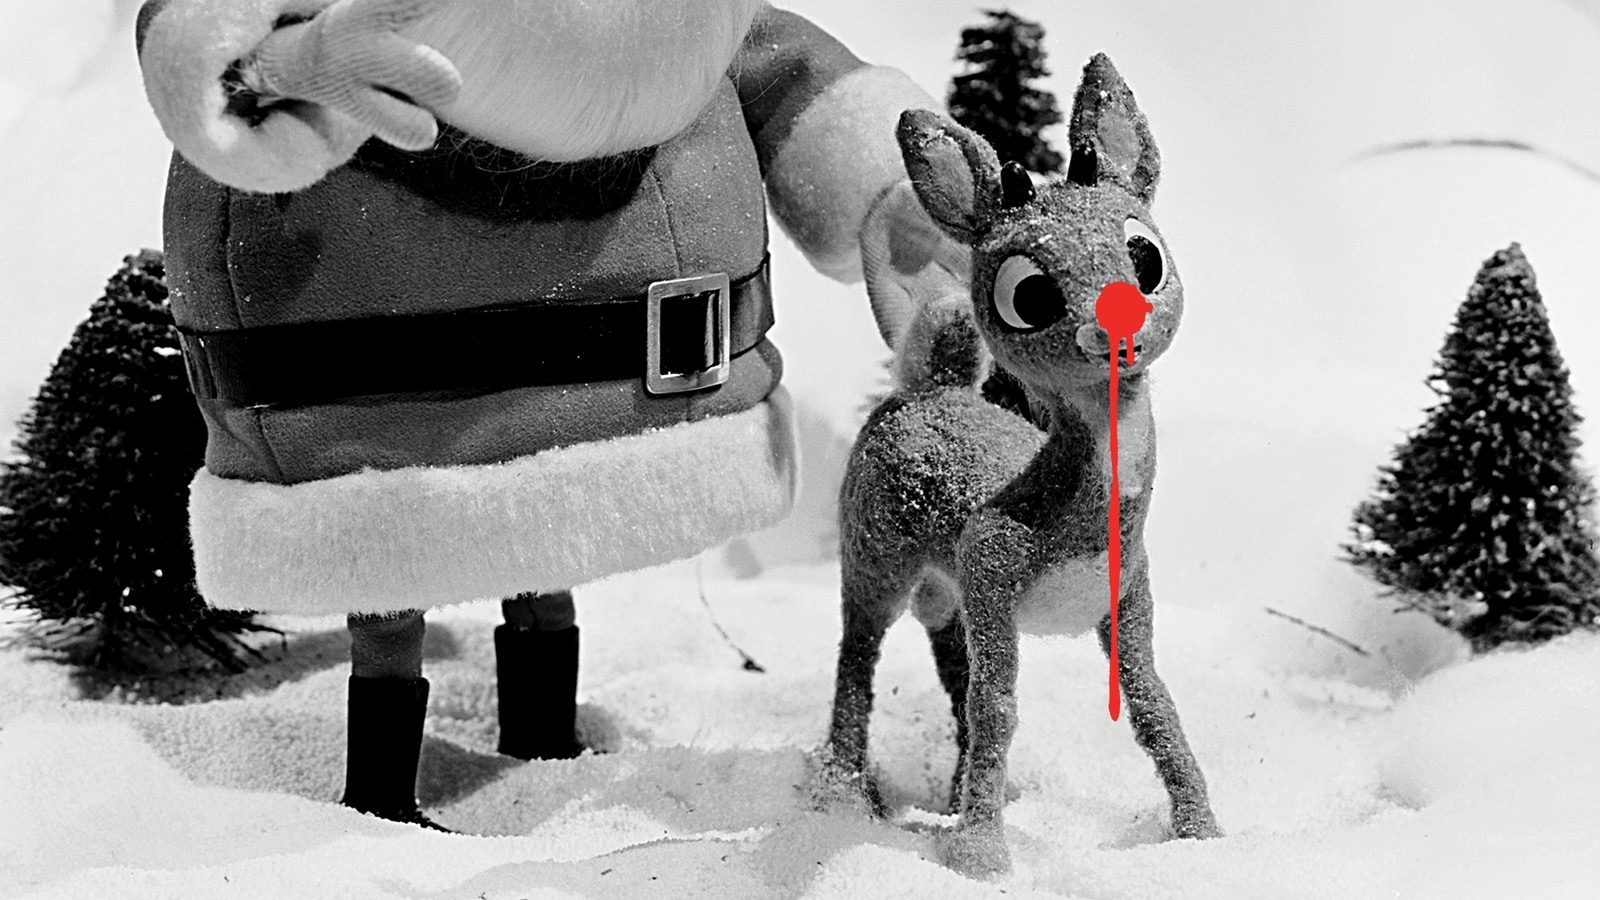 Winter Christmas Theme Door Stop Rudolph The Red Nose Reindeer